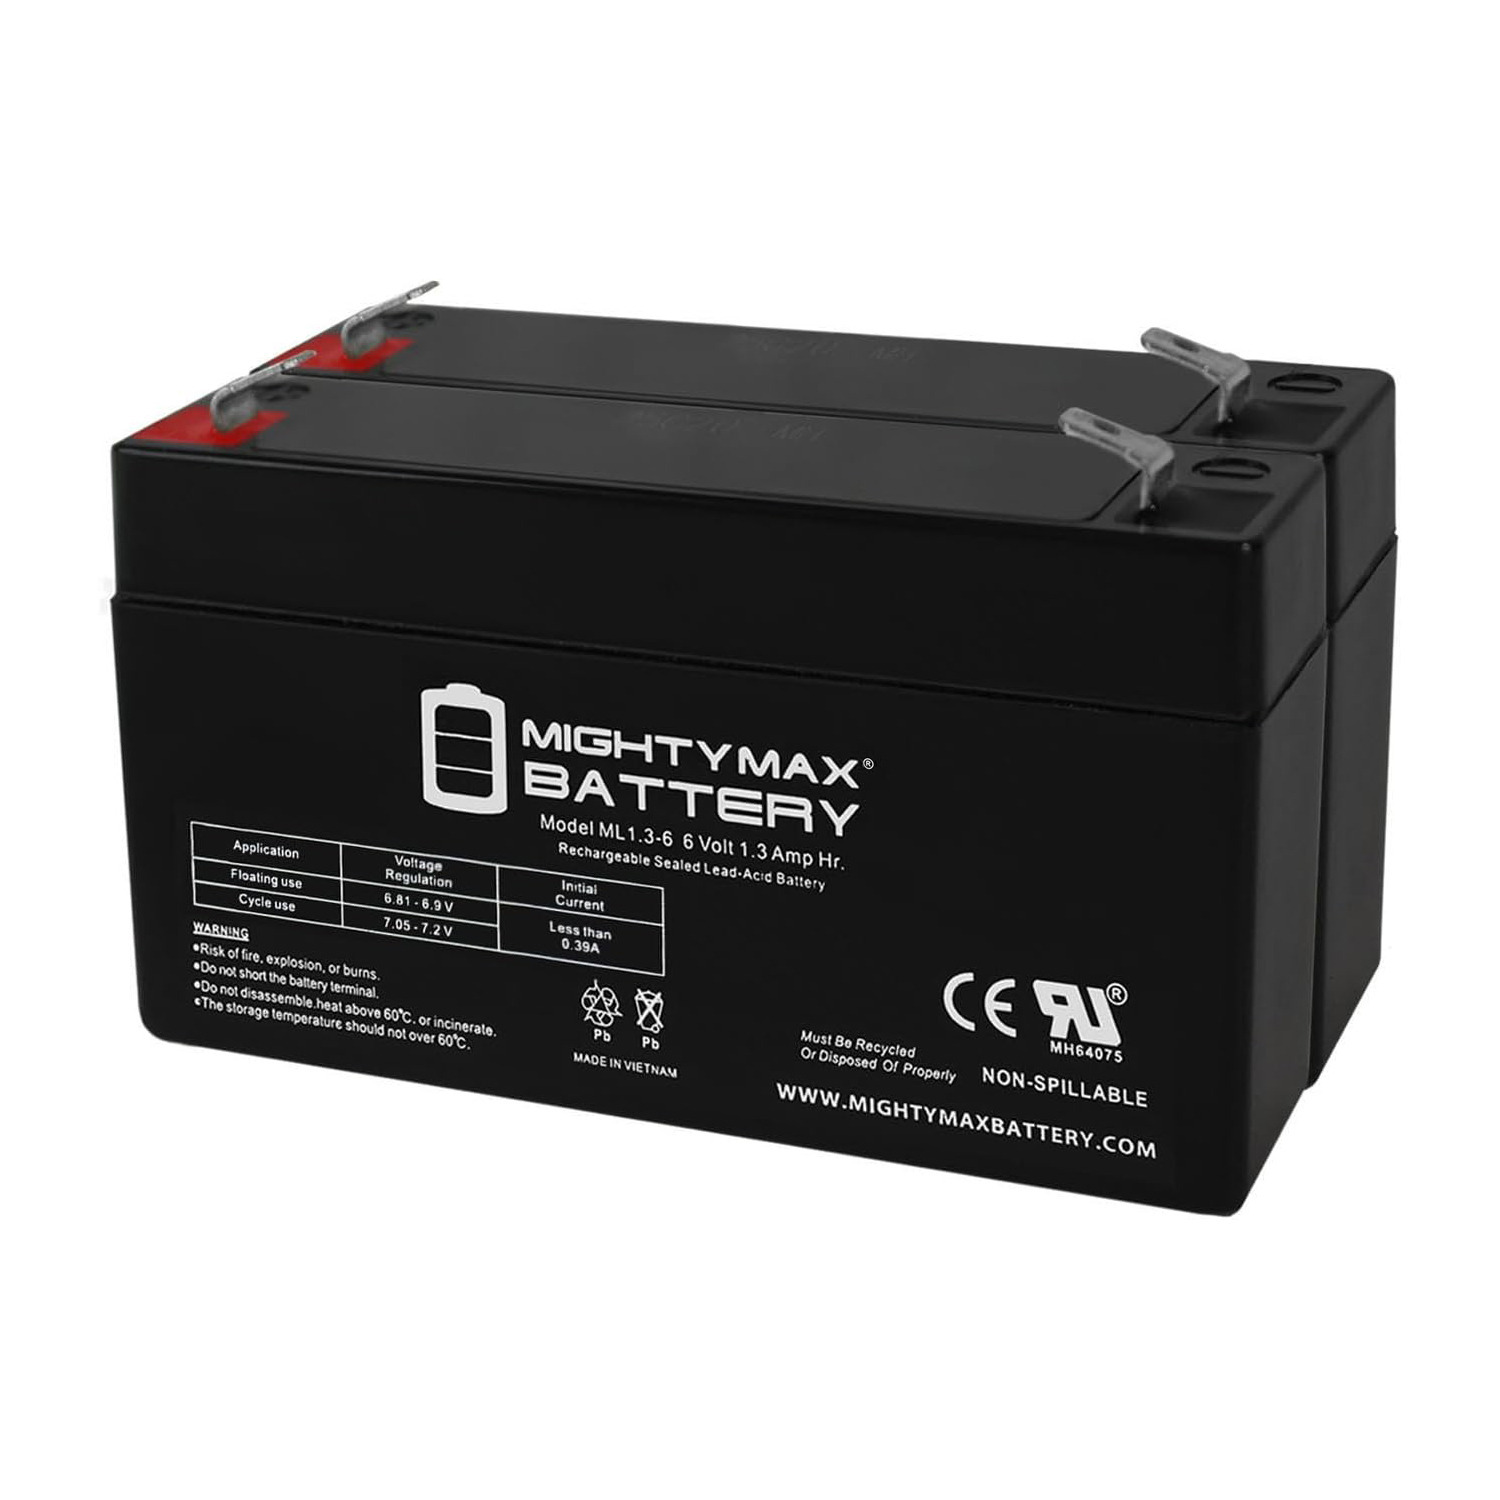 6V 1.3Ah SLA Replacement Battery for Elk ELK-0613 - 2 Pack